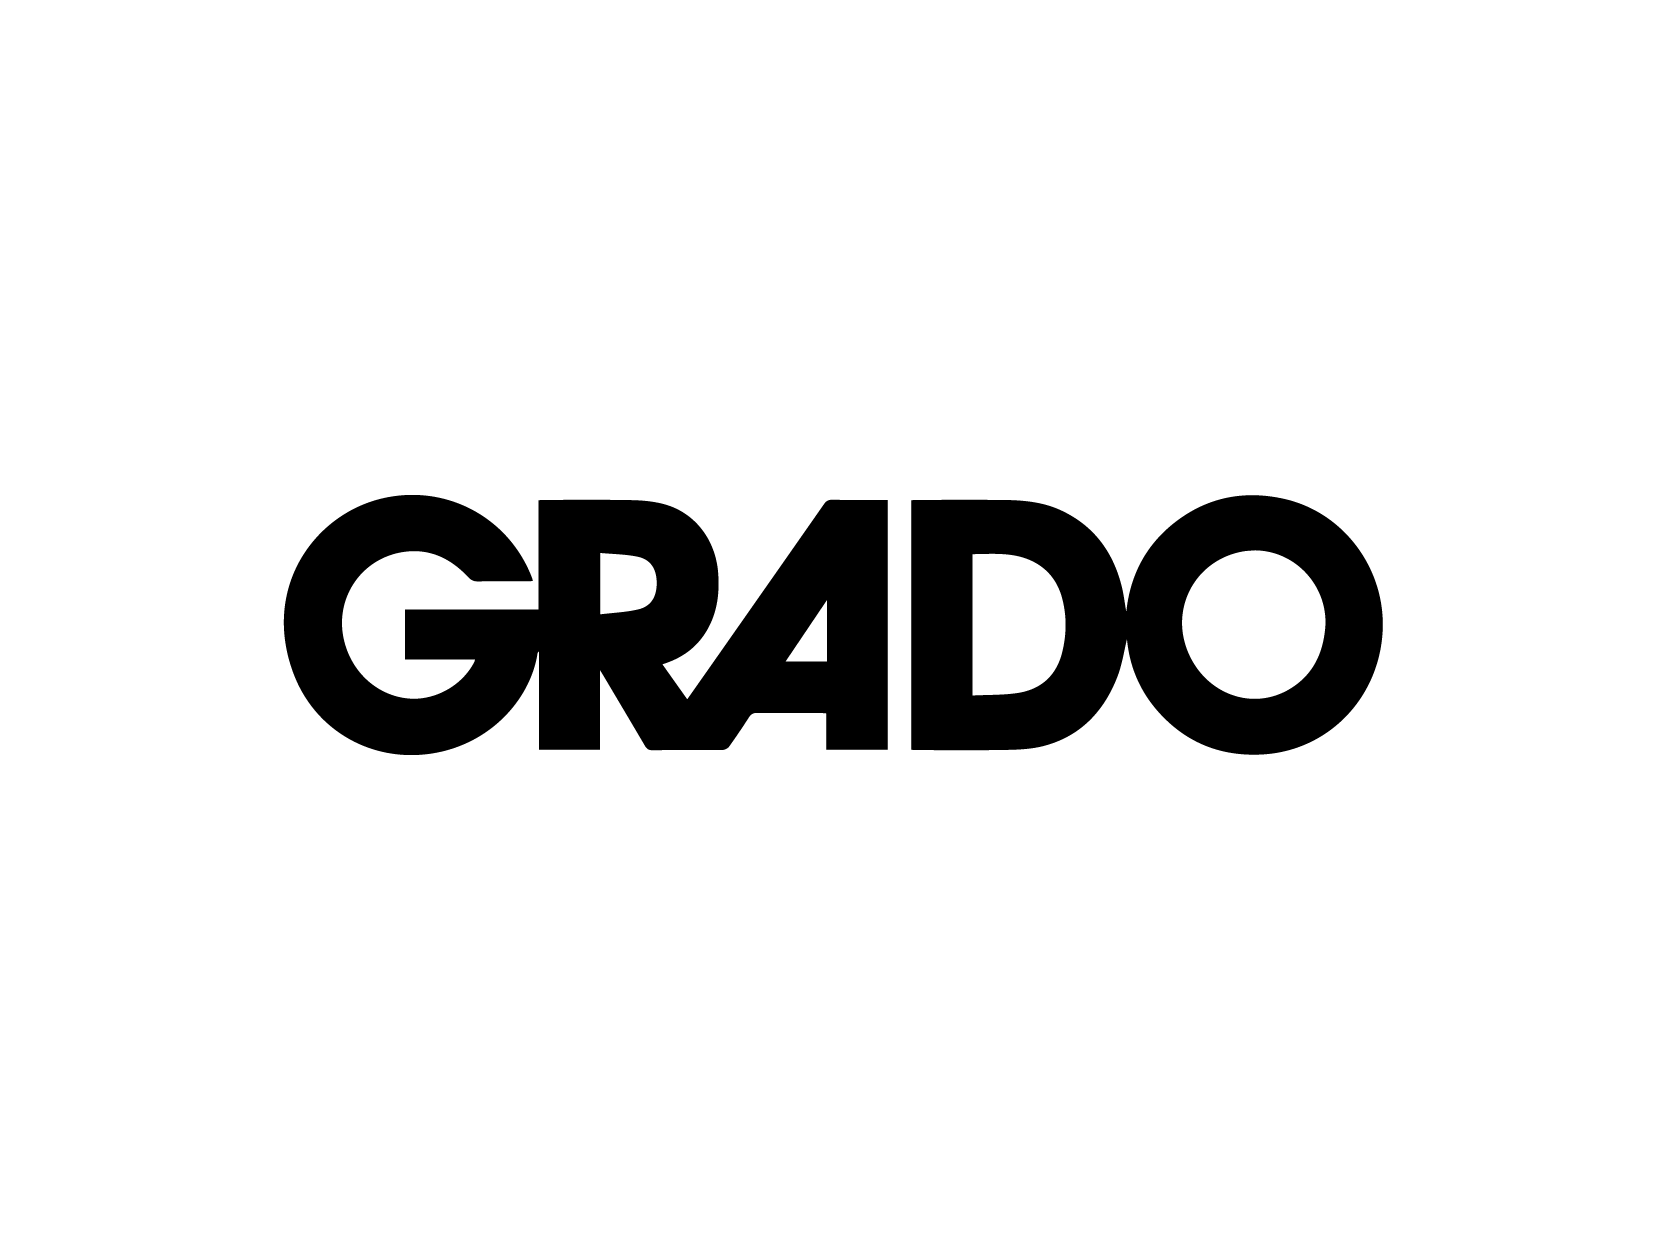 grado(歌德)标志logo设计